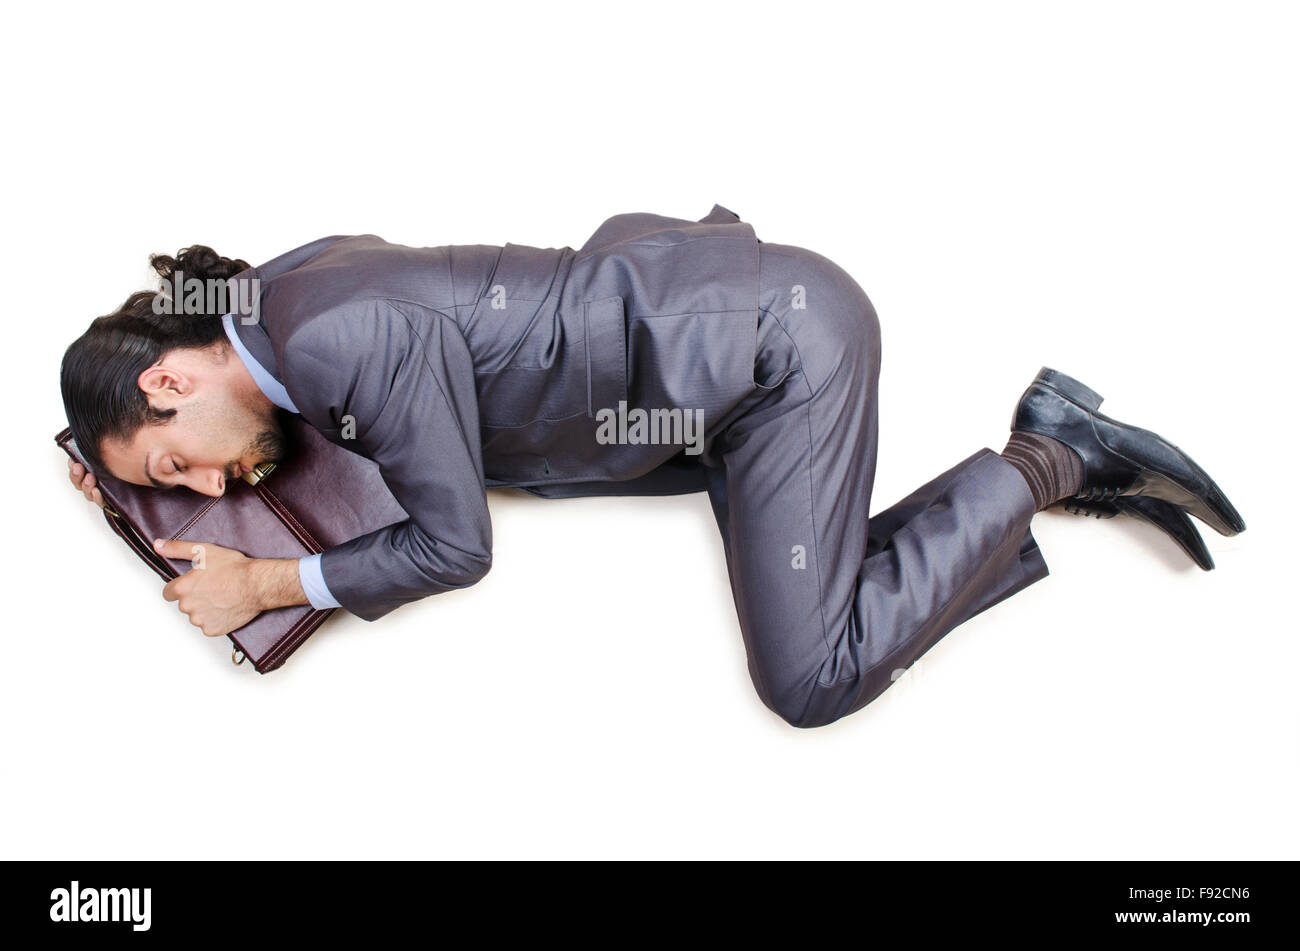 Dead businessman on the floor Stock Photo